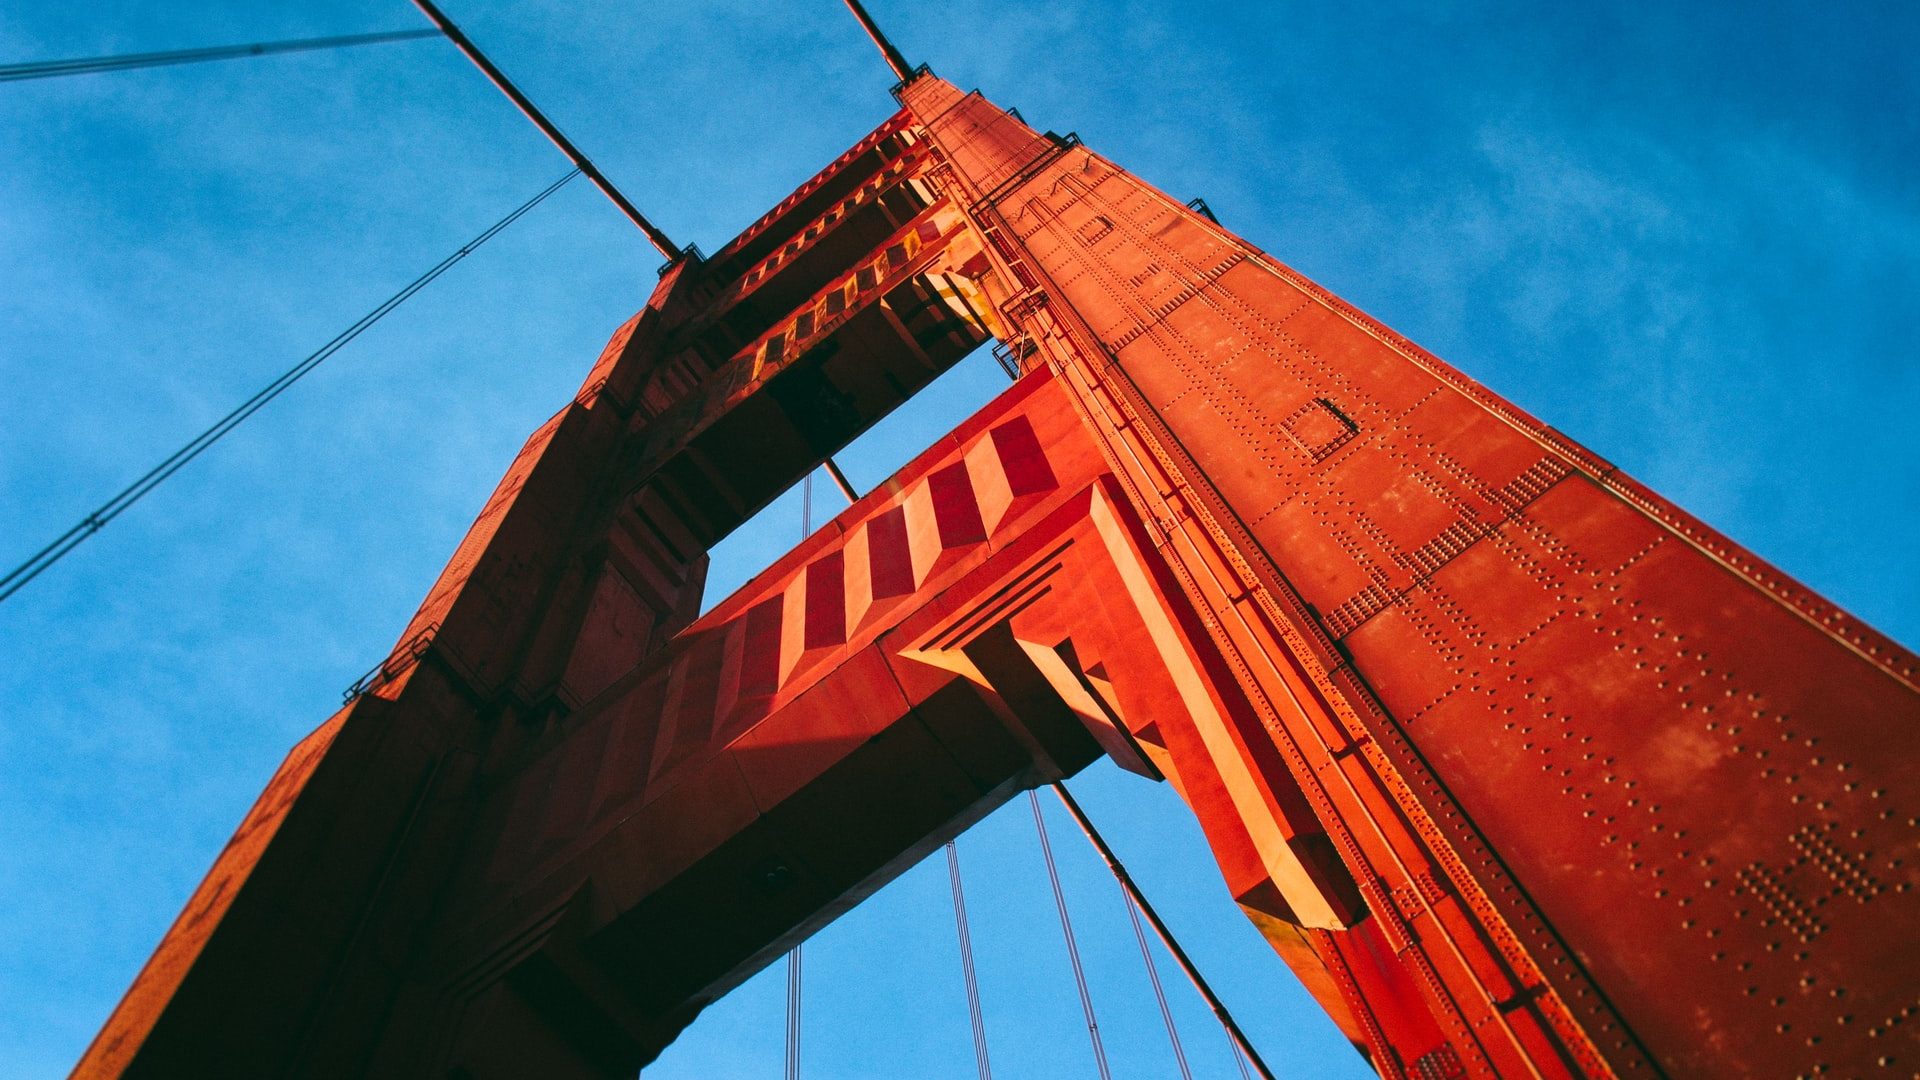 Detalhe da ponte Golden Gate, em San Francisco, Califórnia. Uma torre metálica vermelha se erguendo. Ao fundo, o céu azul.